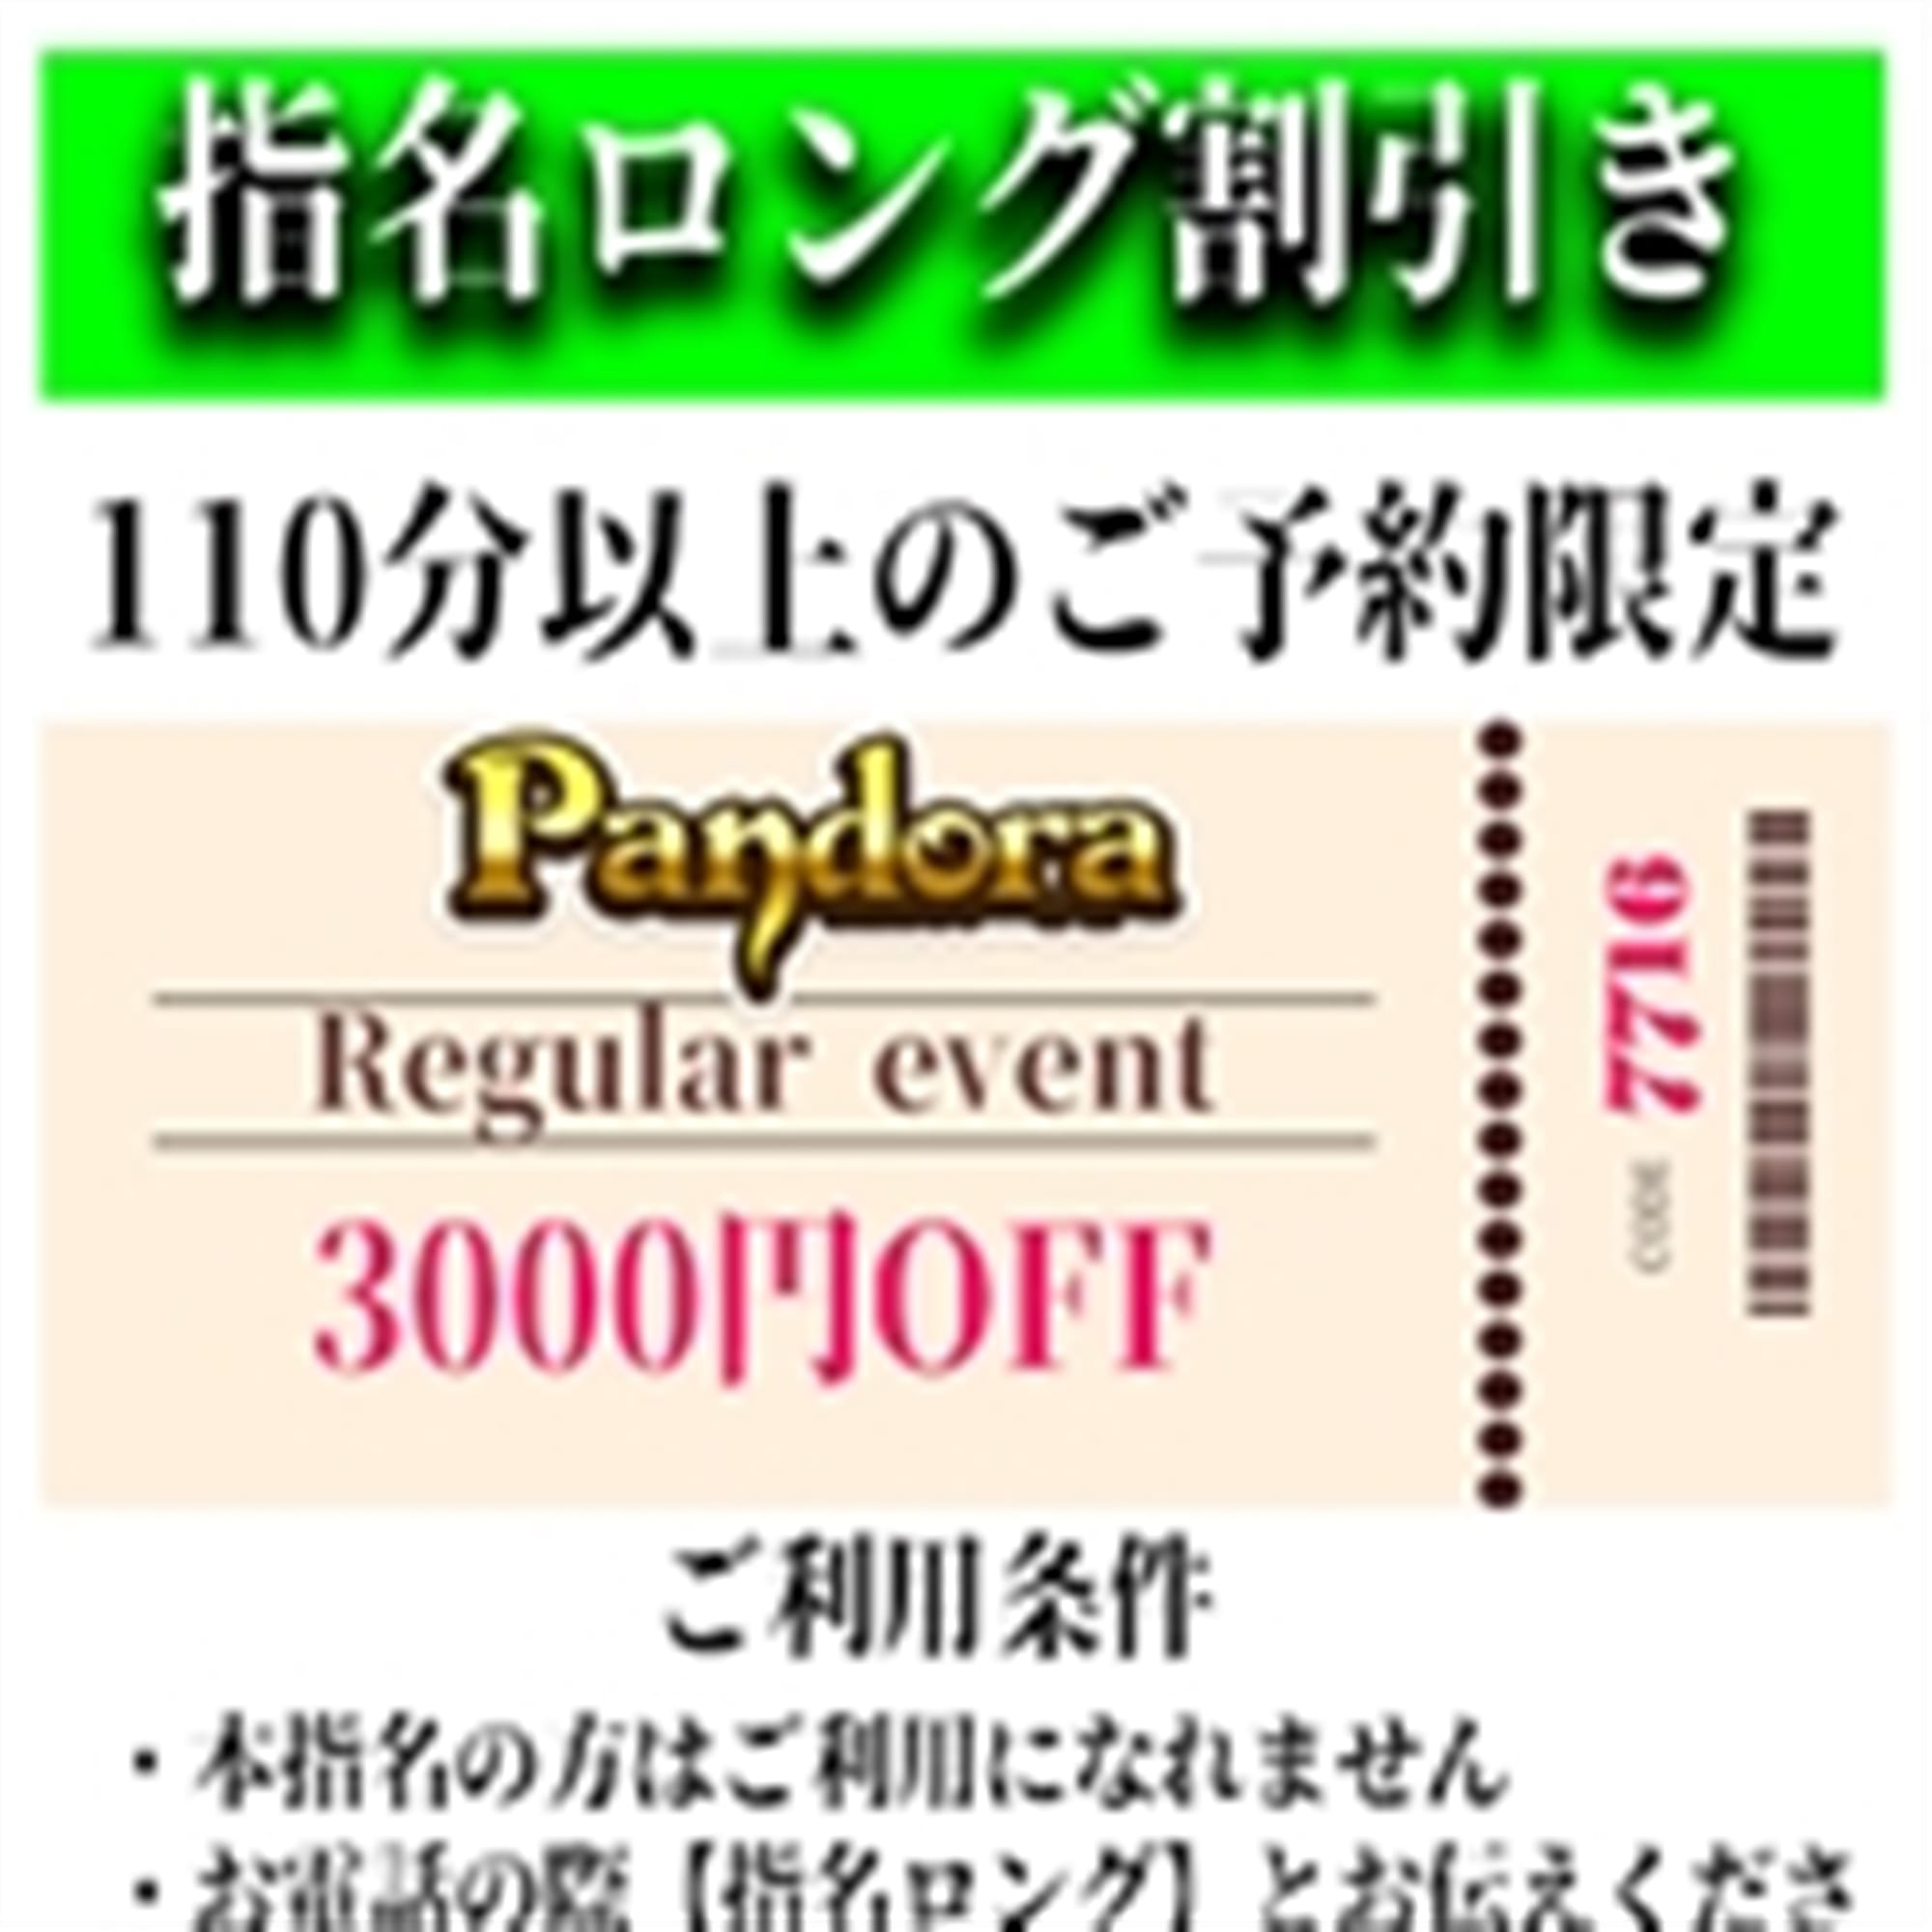 「ご指名のお客様も遊べるロングコース割引」04/27(土) 06:25 | Pandora(パンドラ)新潟のお得なニュース